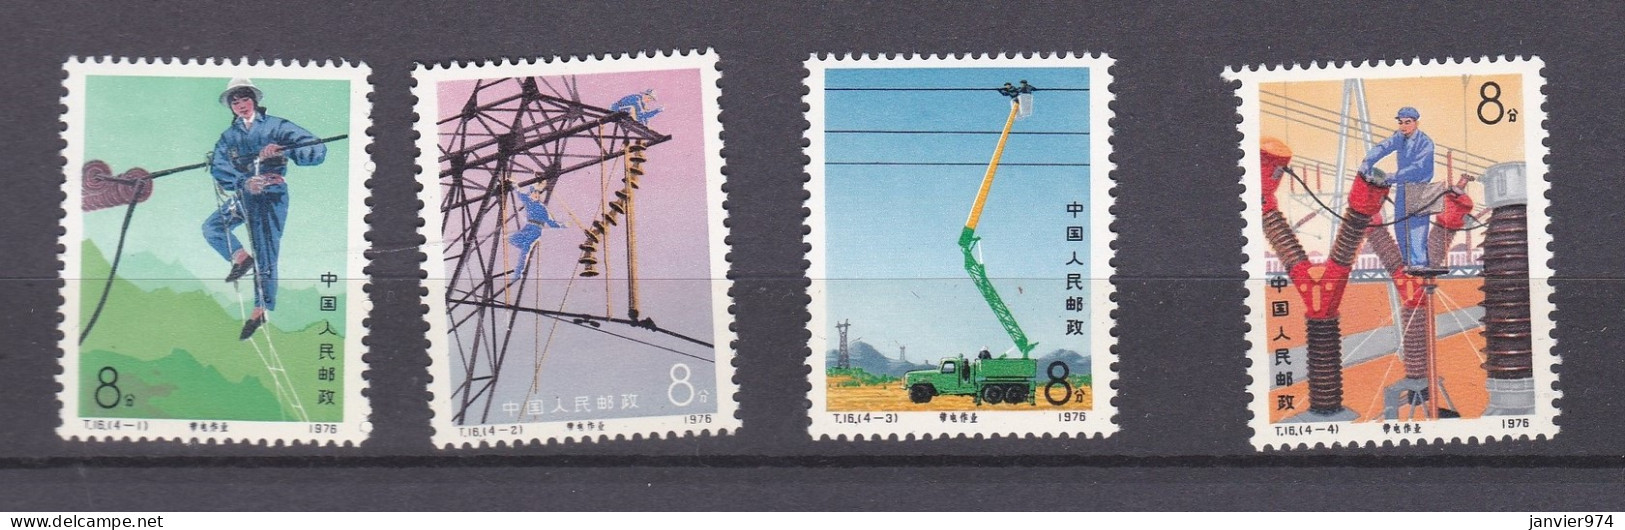 Chine 1976 La Serie Complete  Entretien Des Lignes électriques, 4 Timbres Neufs 1296 à 1299 - Ongebruikt